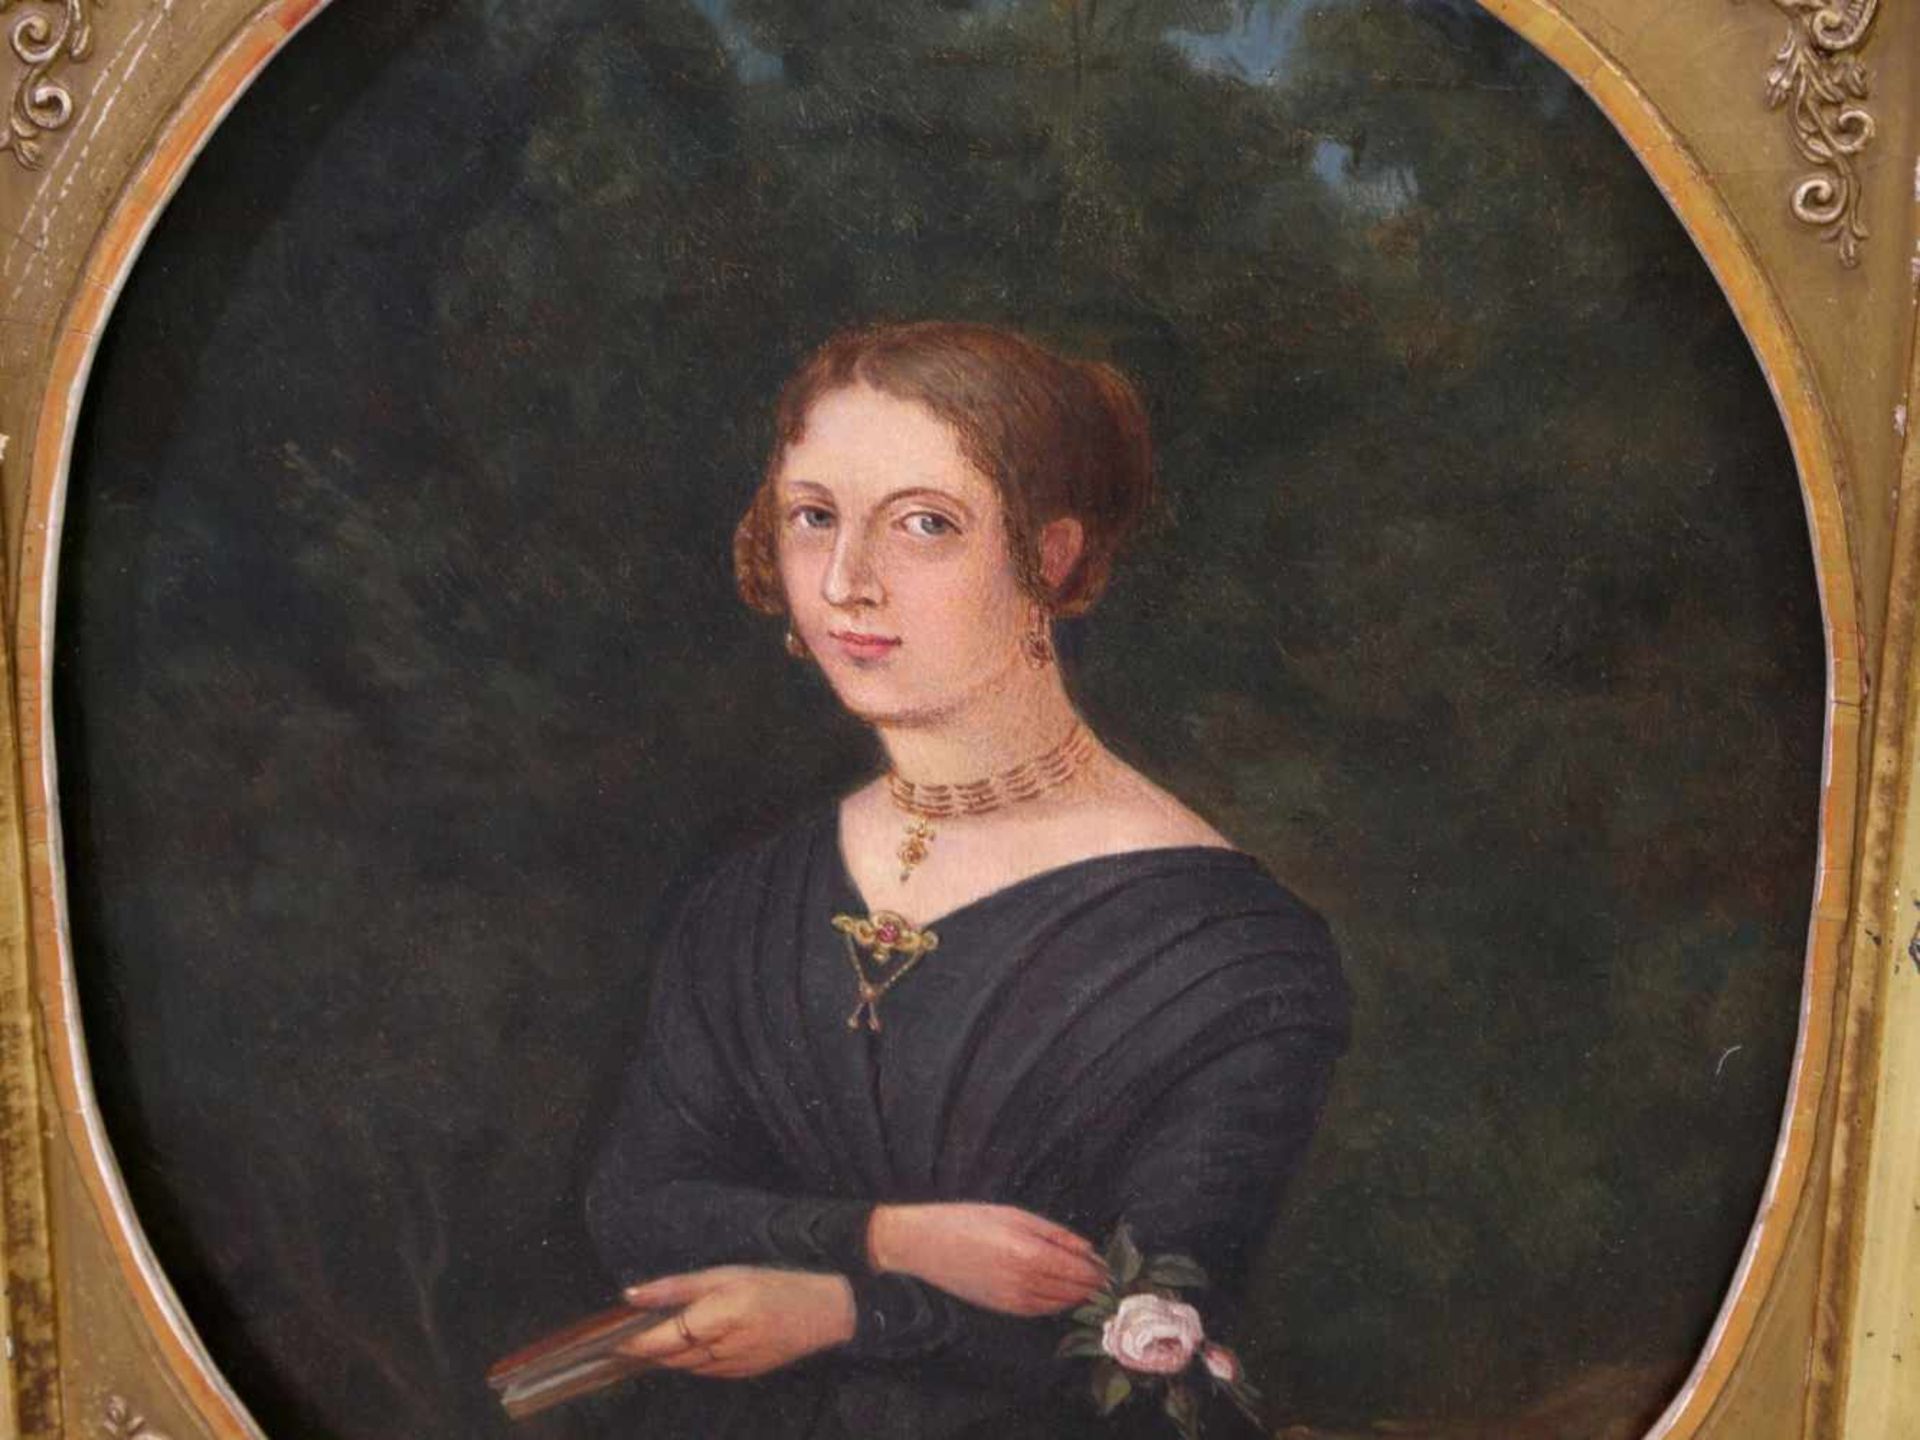 Unbekannt - Biedermeier-Portrait einer jungen Dame um 1850 - Image 3 of 10